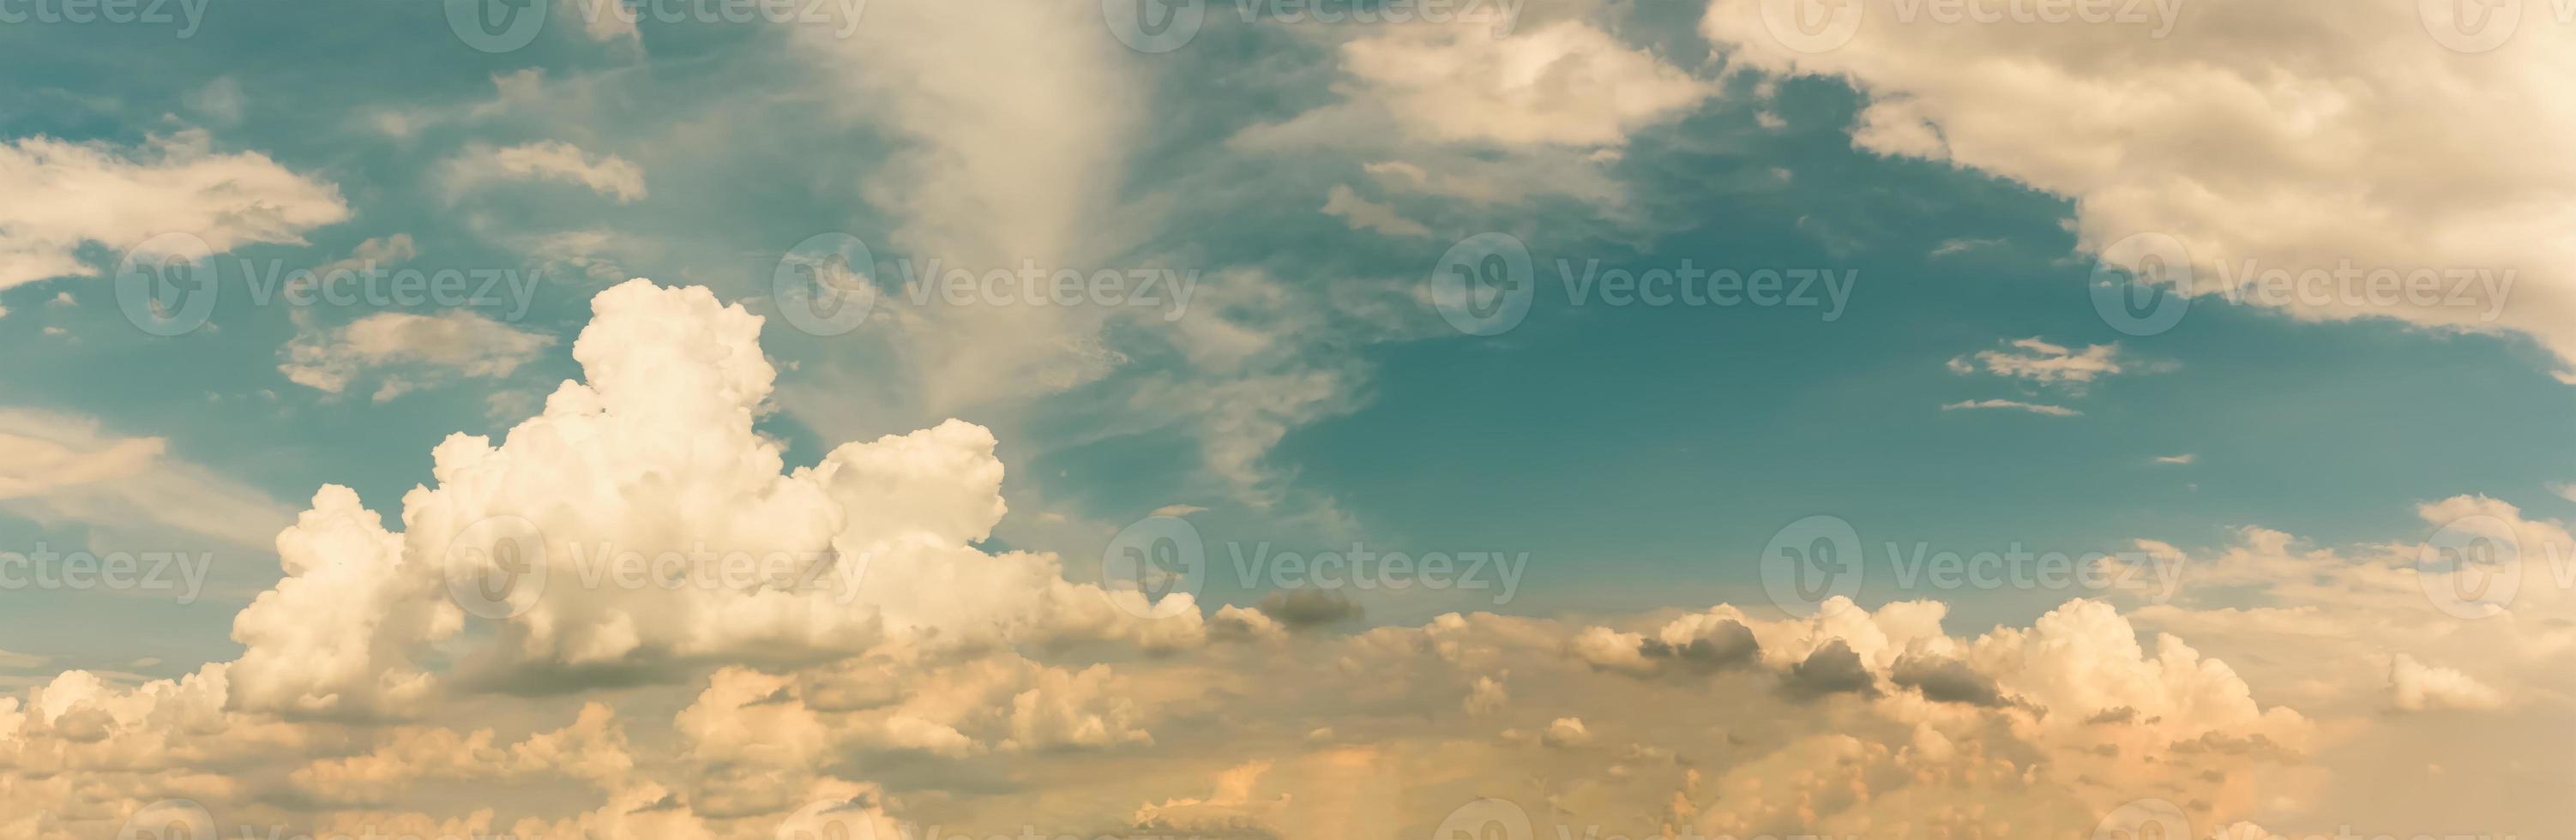 panorama del cielo nuvoloso estivo con nuvola di pile foto